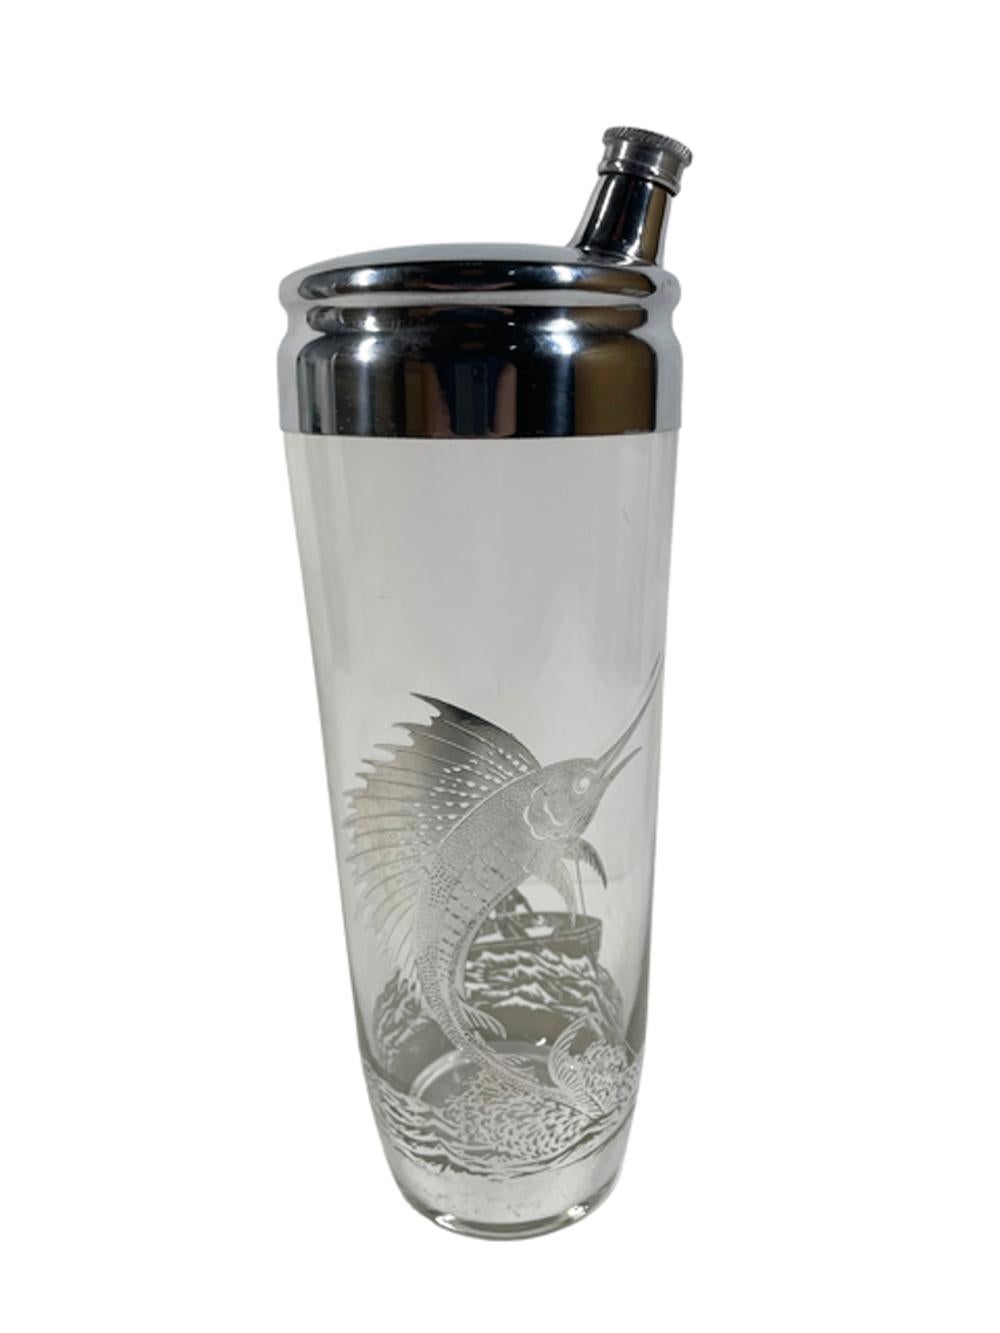 Art-Deco-Cocktailshaker mit Silberauflage und 6 doppelte Old-Fashioned-Gläser. Der Shaker und die Gläser sind alle mit Sterling-Overlay verziert, mit einem springenden Segelfisch/Marlin auf der Vorderseite und zwei Männern, die von einem Dory aus